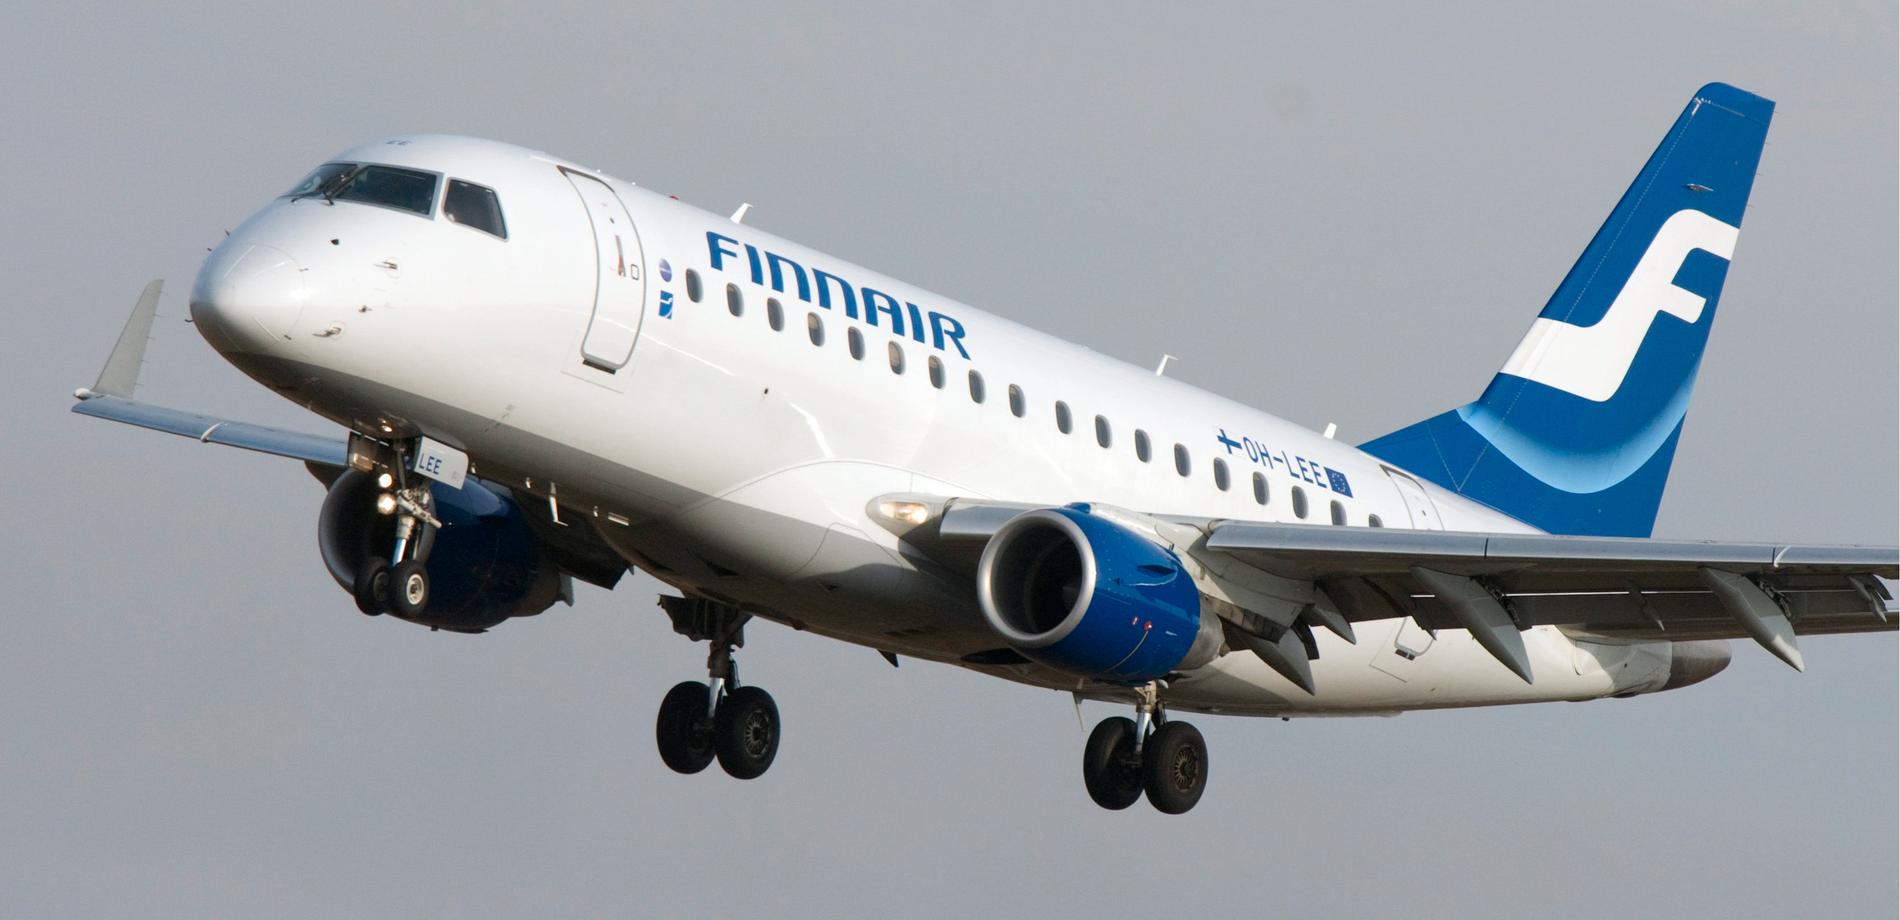 En pilot på Finnair var rejält berusad när han skulle checka in planet inför avgång på Helsingfors-Vanda flygplats. Arkivbild.